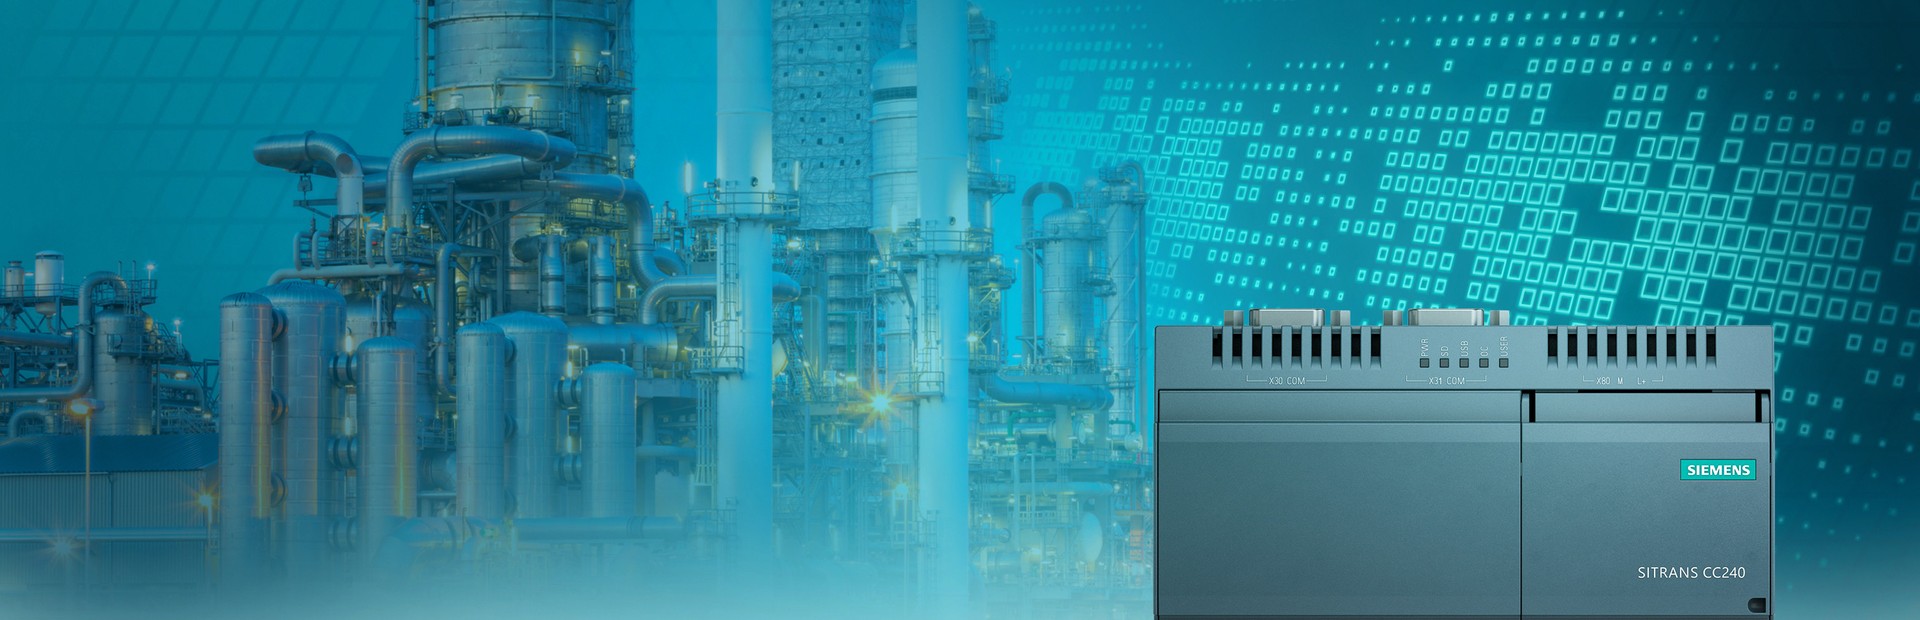 Společnost Siemens představuje novu IoT bránu Sitrans CloudConnect 240 pro zpracovatelský průmysl. Poskytuje druhý datový kanál, zcela nezávislý na řídicím systému, který se používá k přenosu dat z jakýchkoli procesních přístrojů s protokolem HART® do světa IT